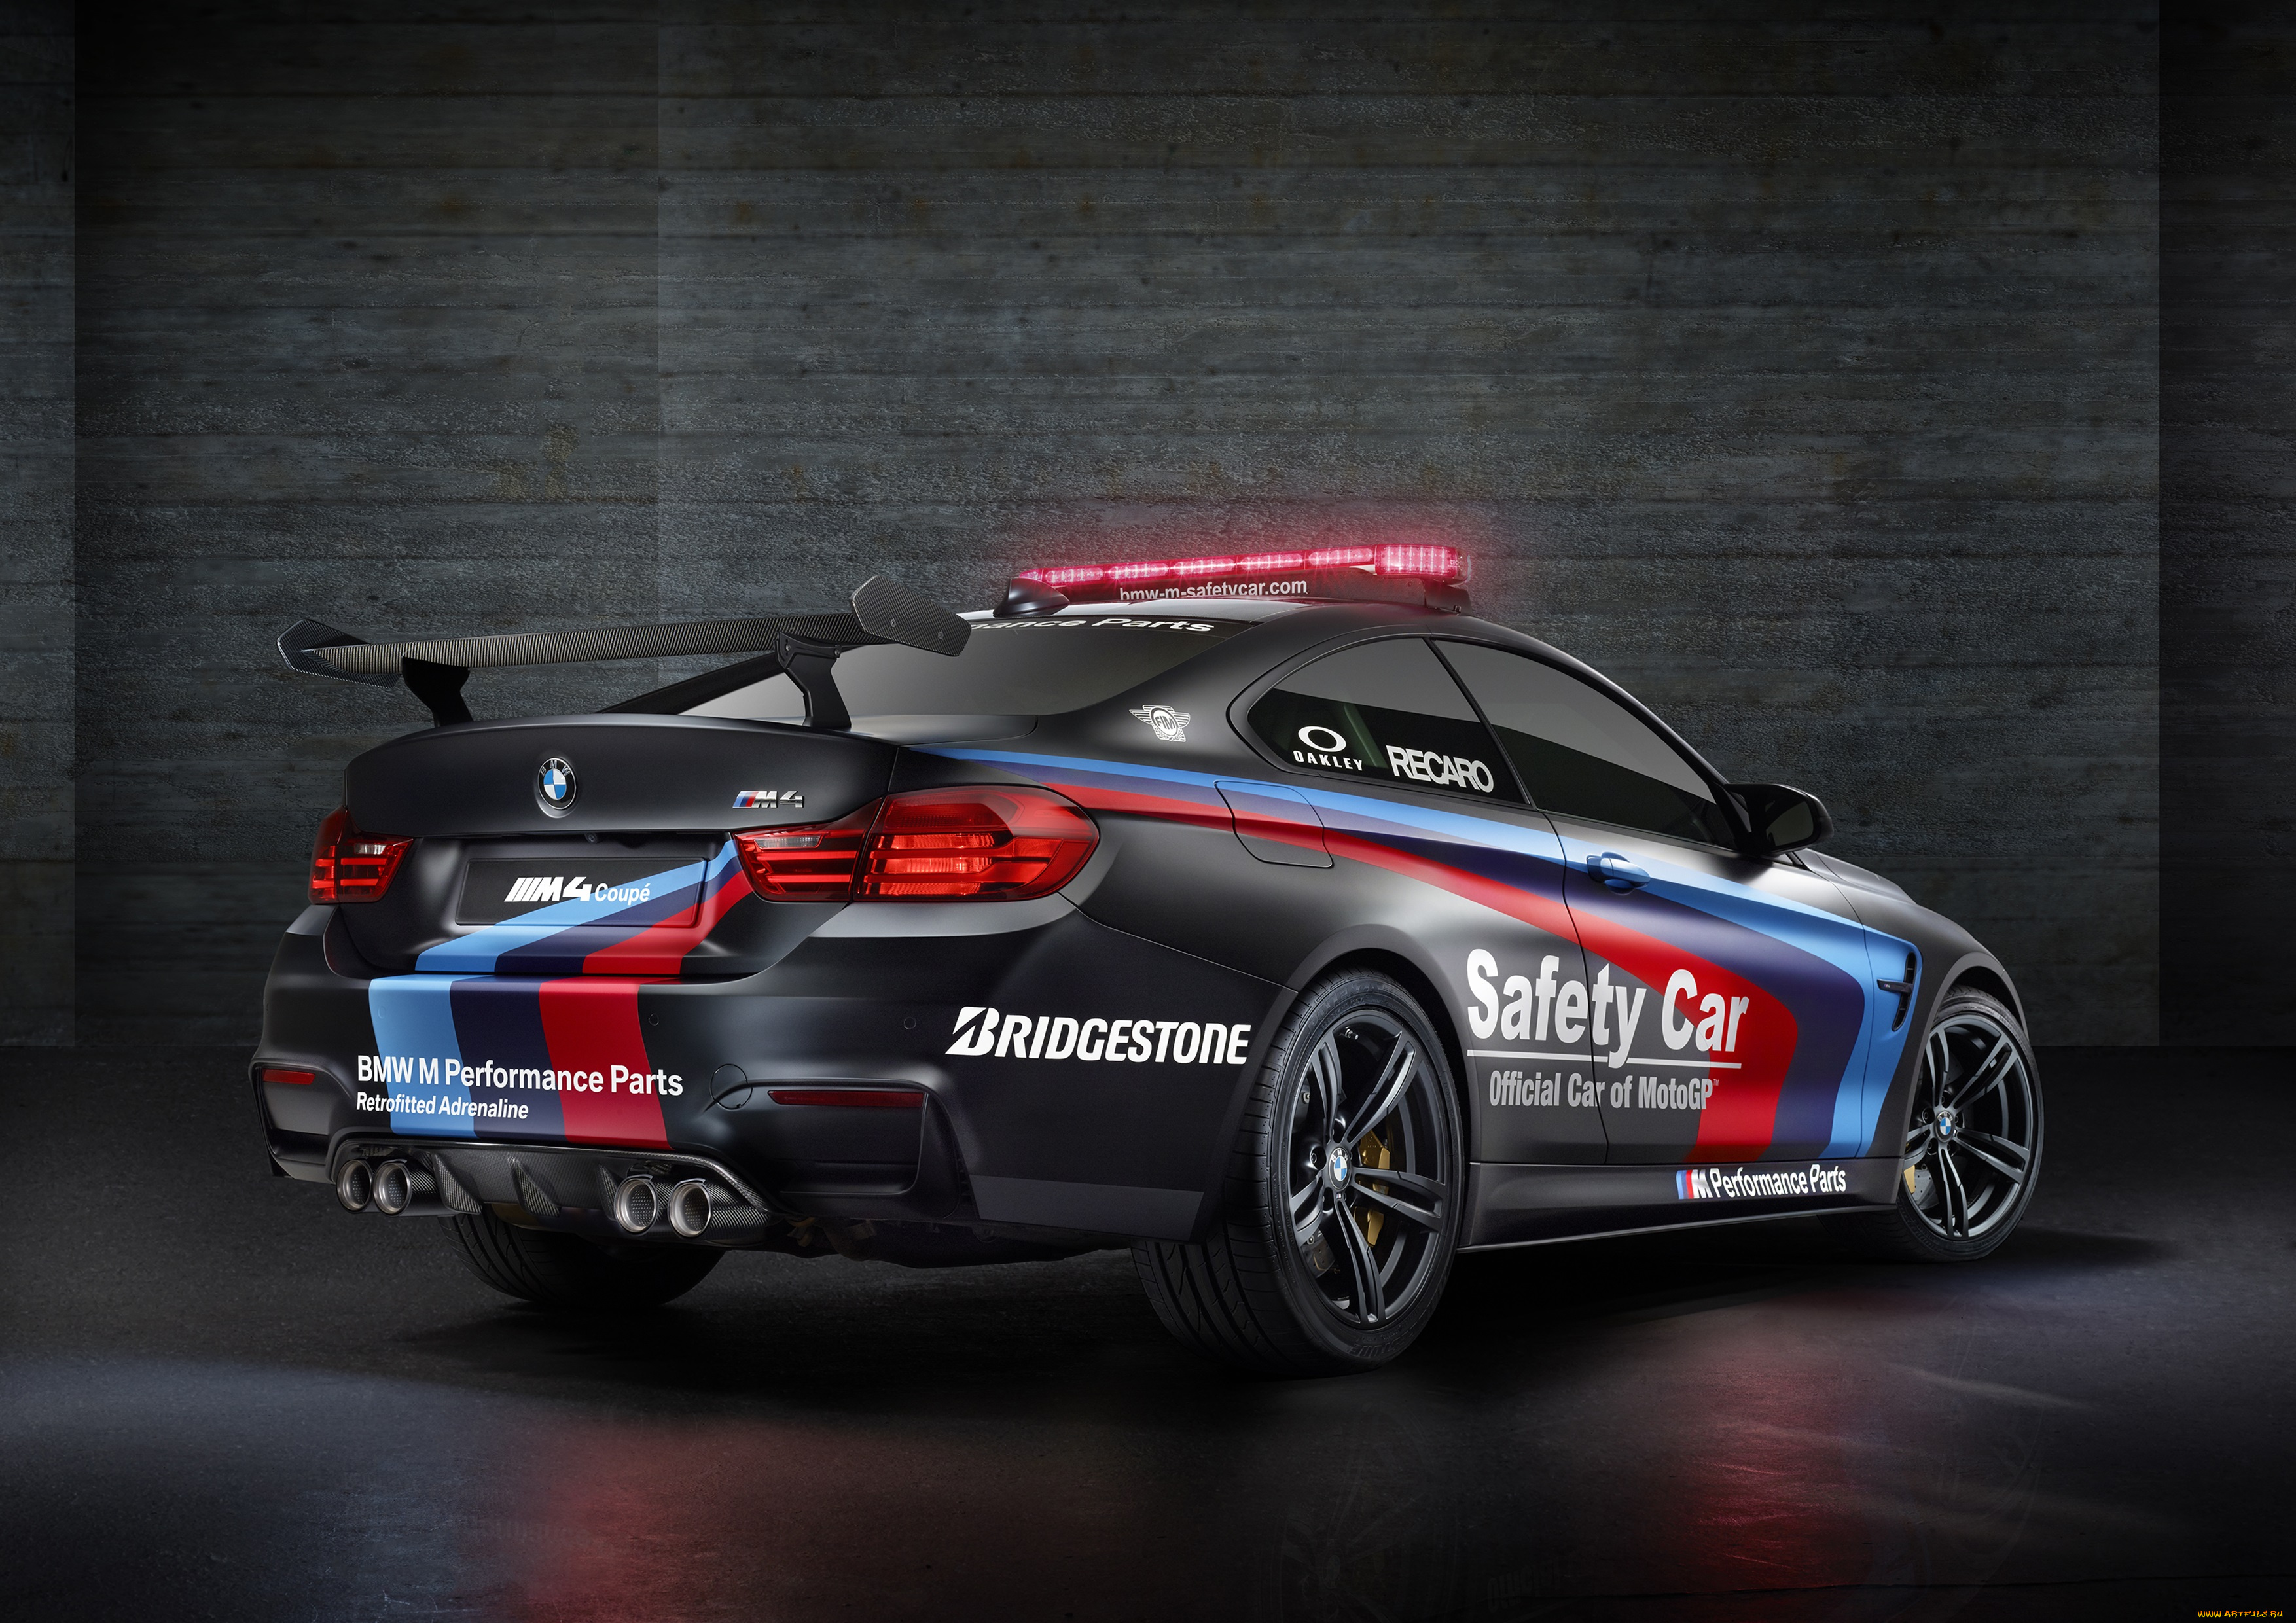 Bmw m power. BMW m4 Safety car. BMW m4 GTS. BMW m4 гоночная. BMW m4 GTS Police.